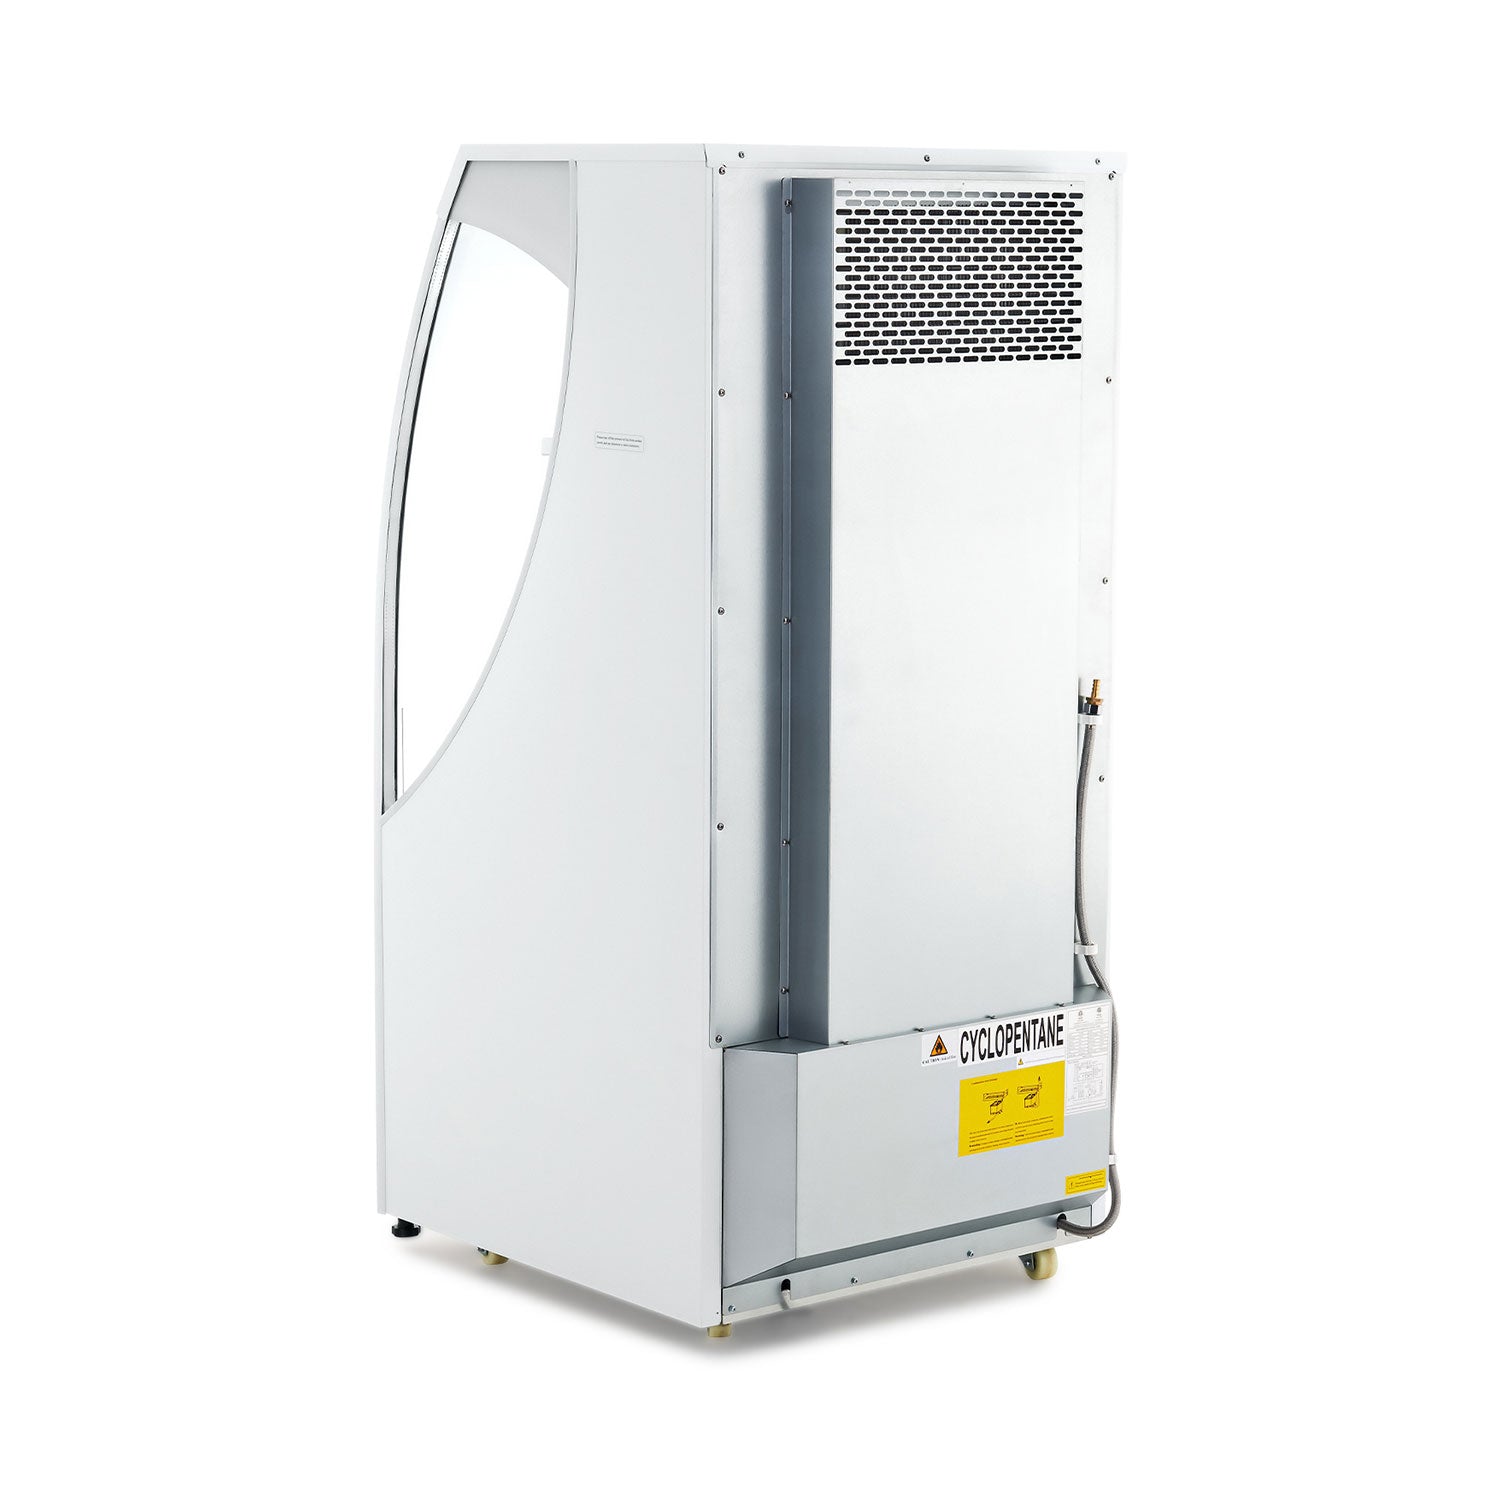 Wilprep 39-inch open air refrigerator